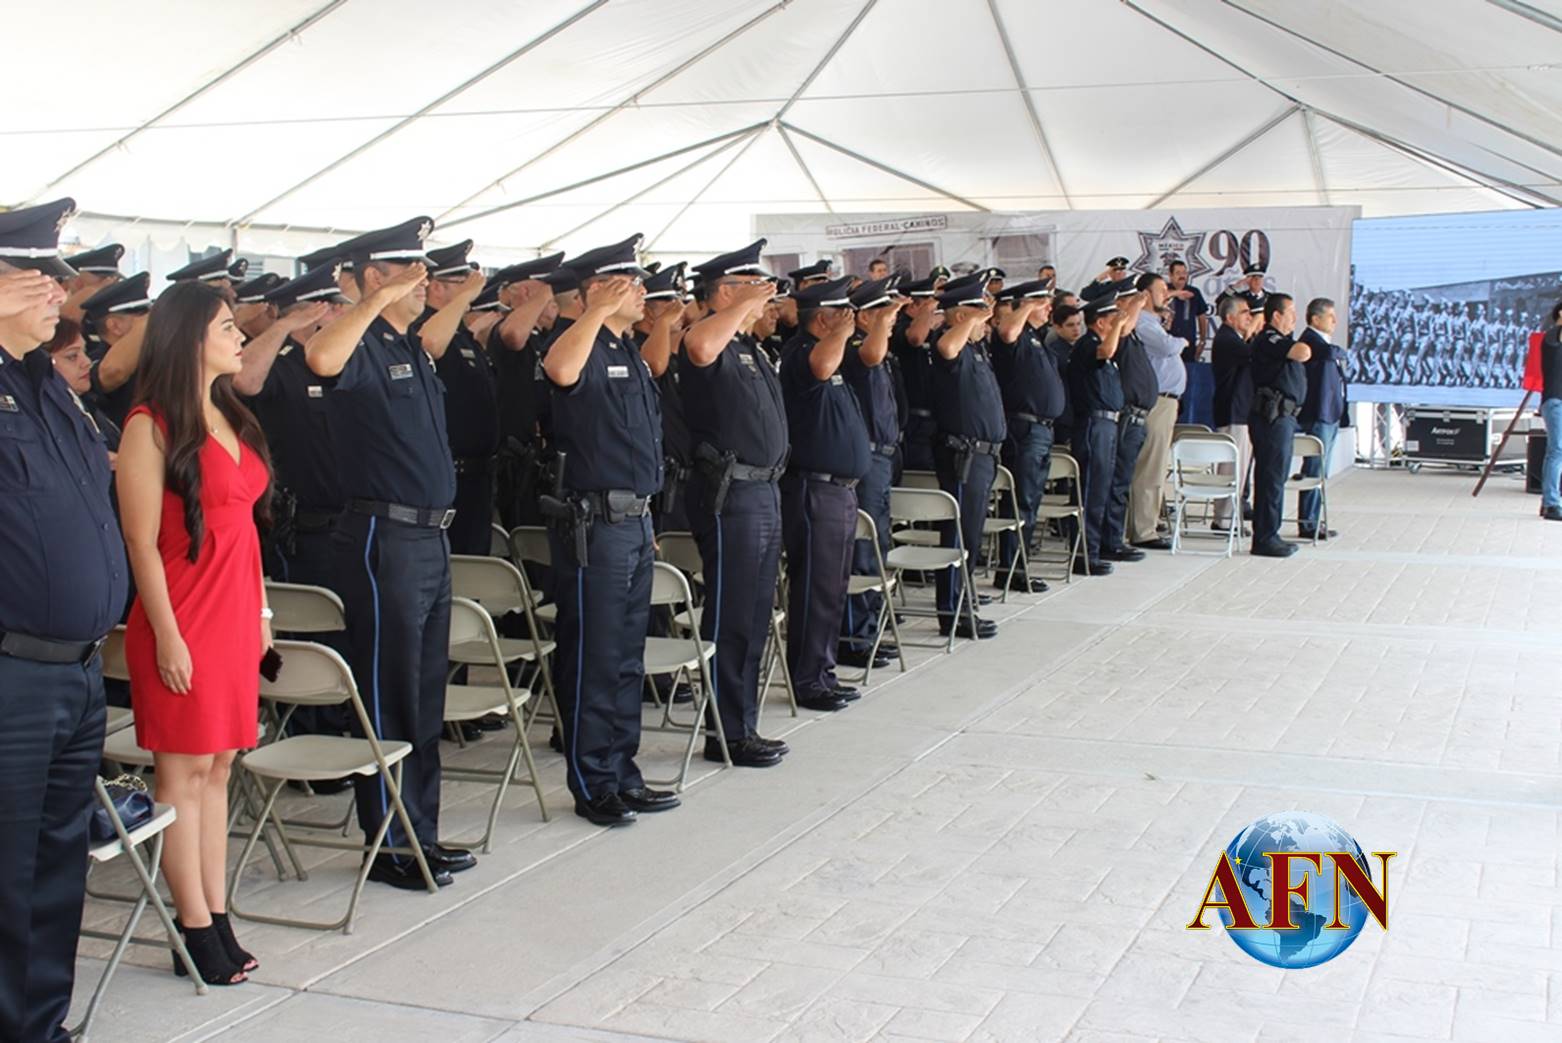 Festejan 90 aniversario de la Policía Federal